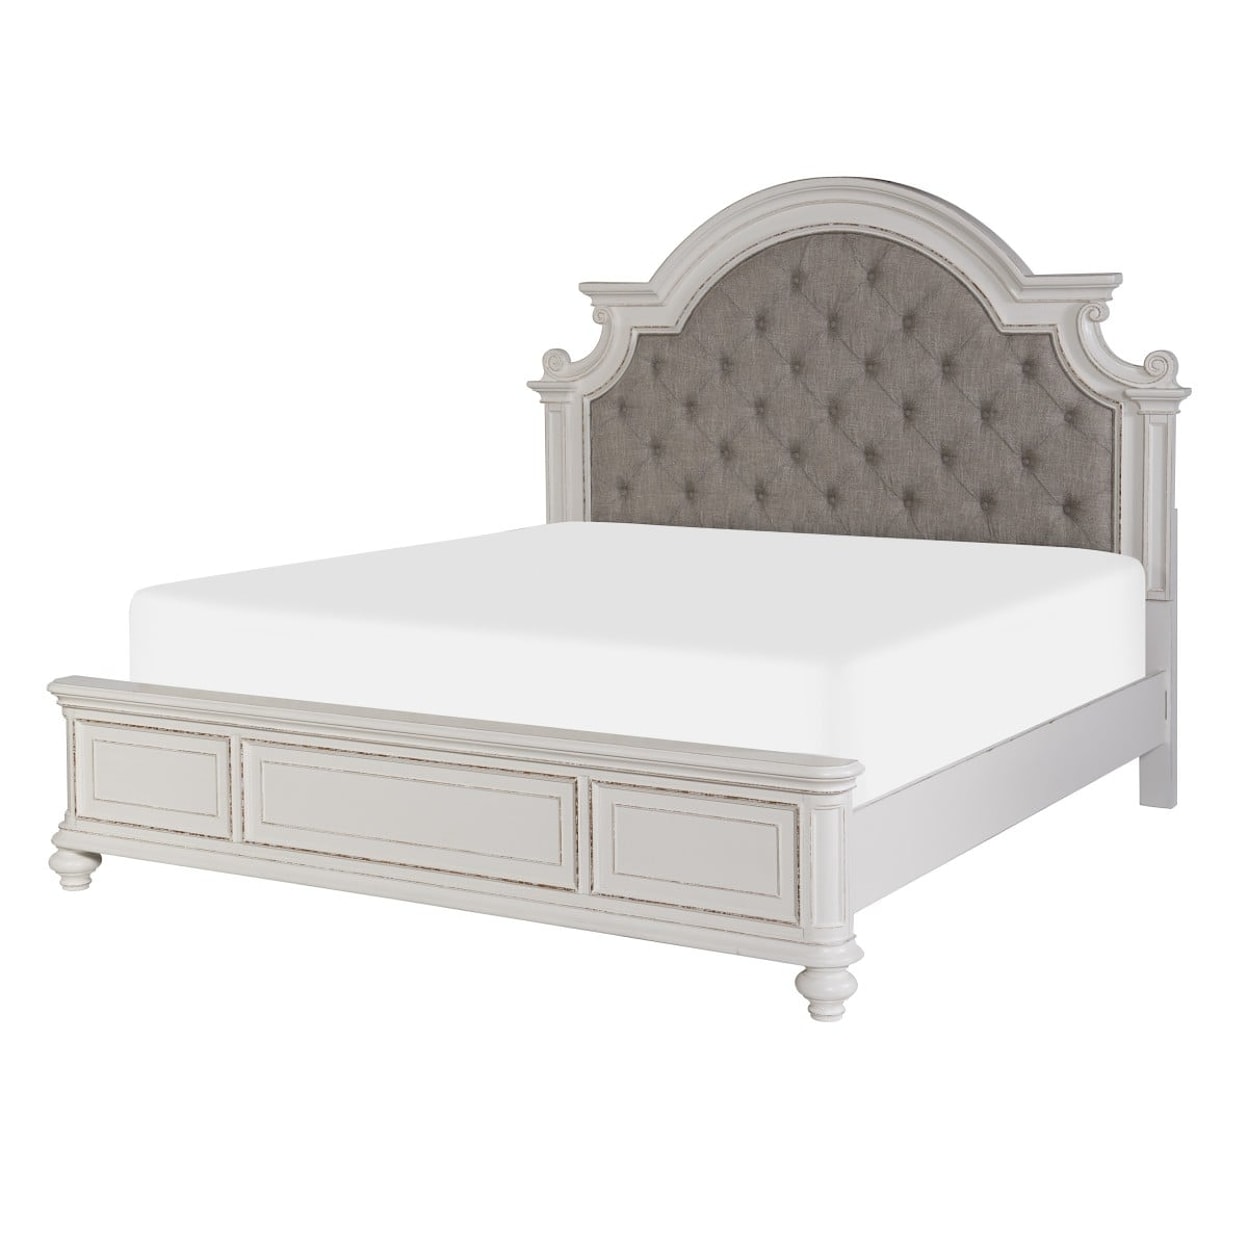 Homelegance Furniture Baylesford CA King Bed